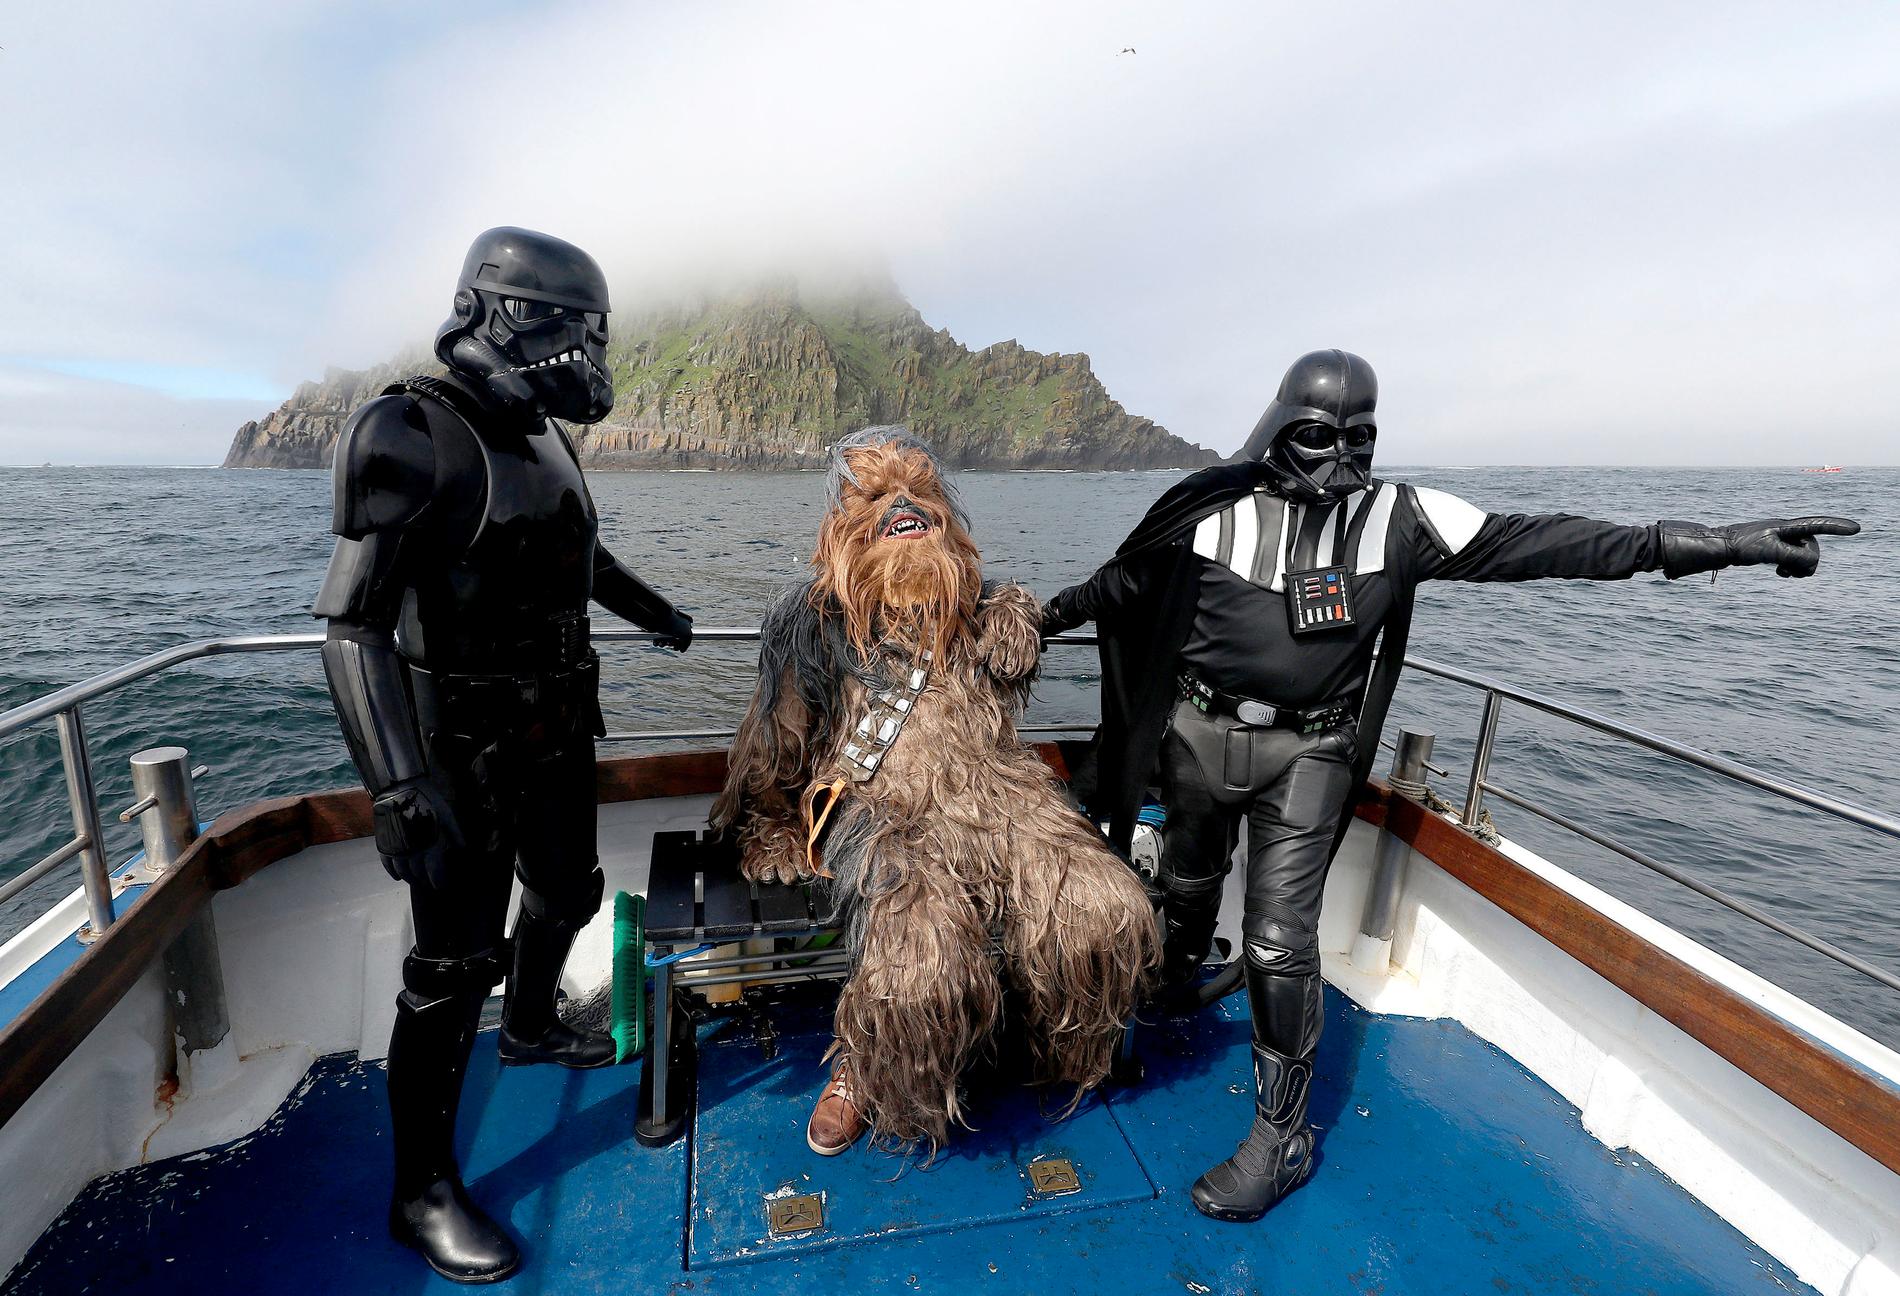 Personer utklädda till en stormtrooper, Chewbacca och Darth Vader på väg mot den första "May the fourth"-festivalen på Irland. Evenemanget pågår hela helgen.